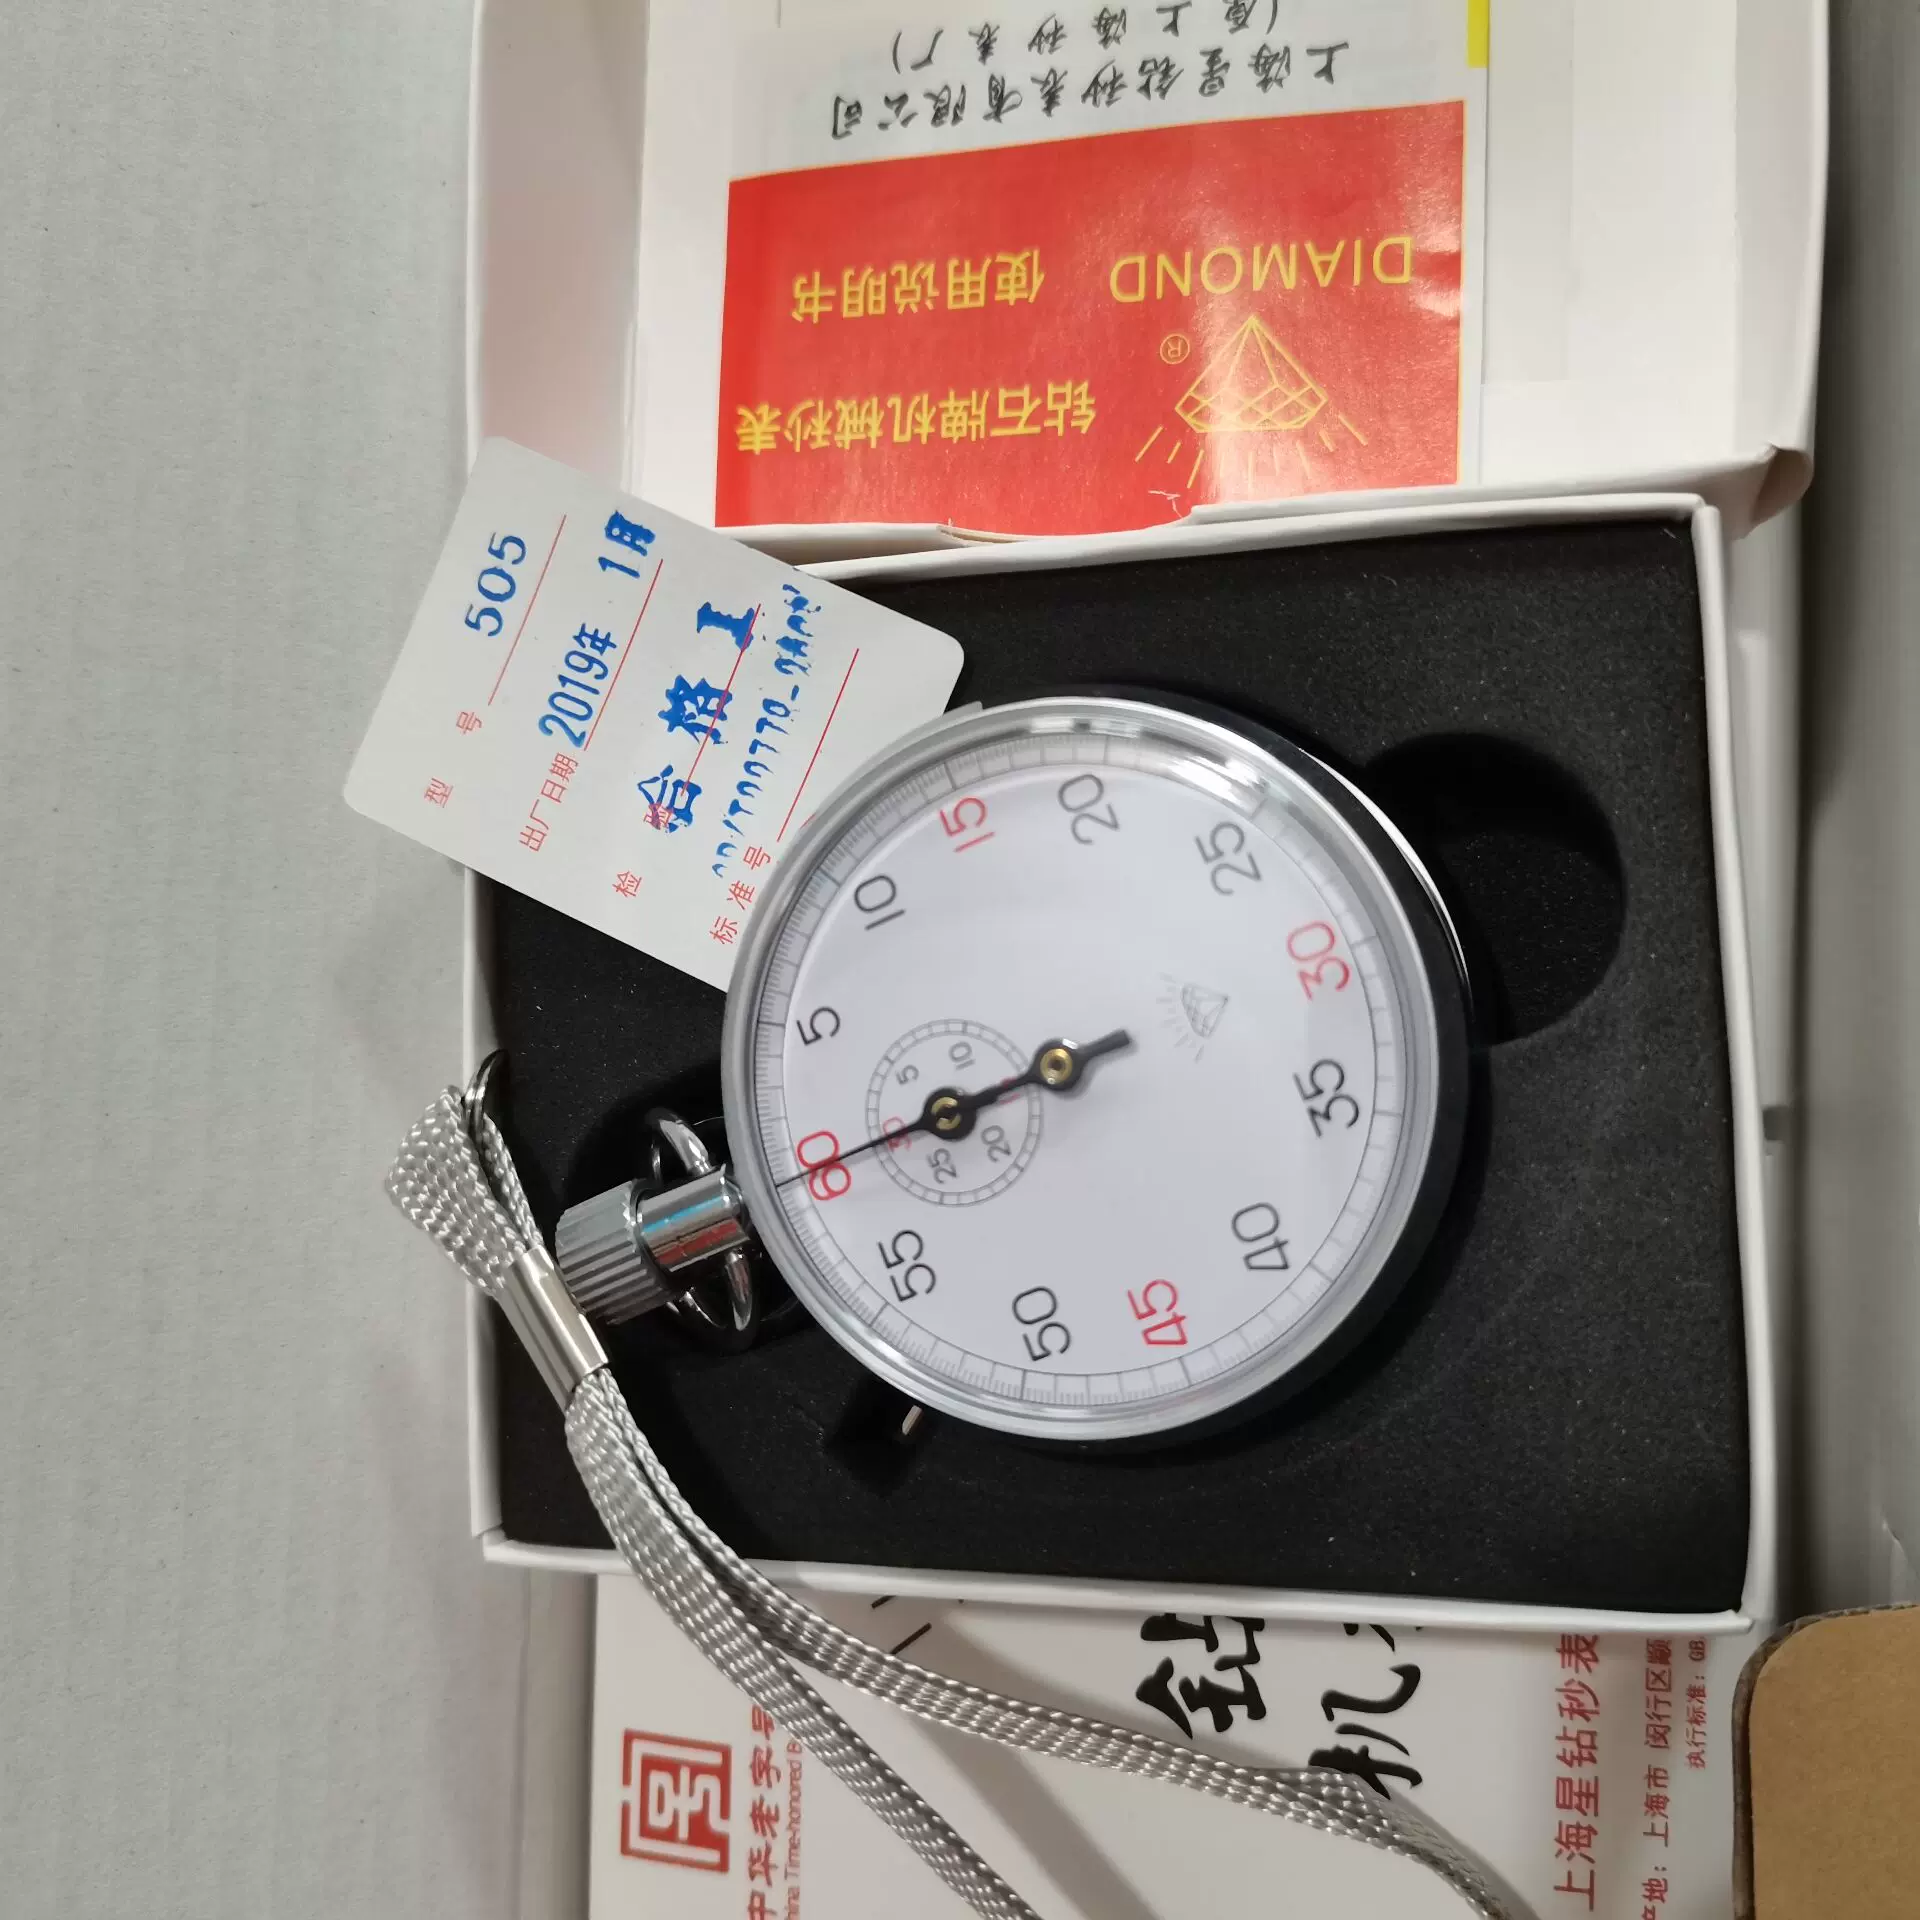 上海星鑽秒錶有限公司鑽石牌秒匠機械秒錶504計時器比賽煤礦專用- Taobao